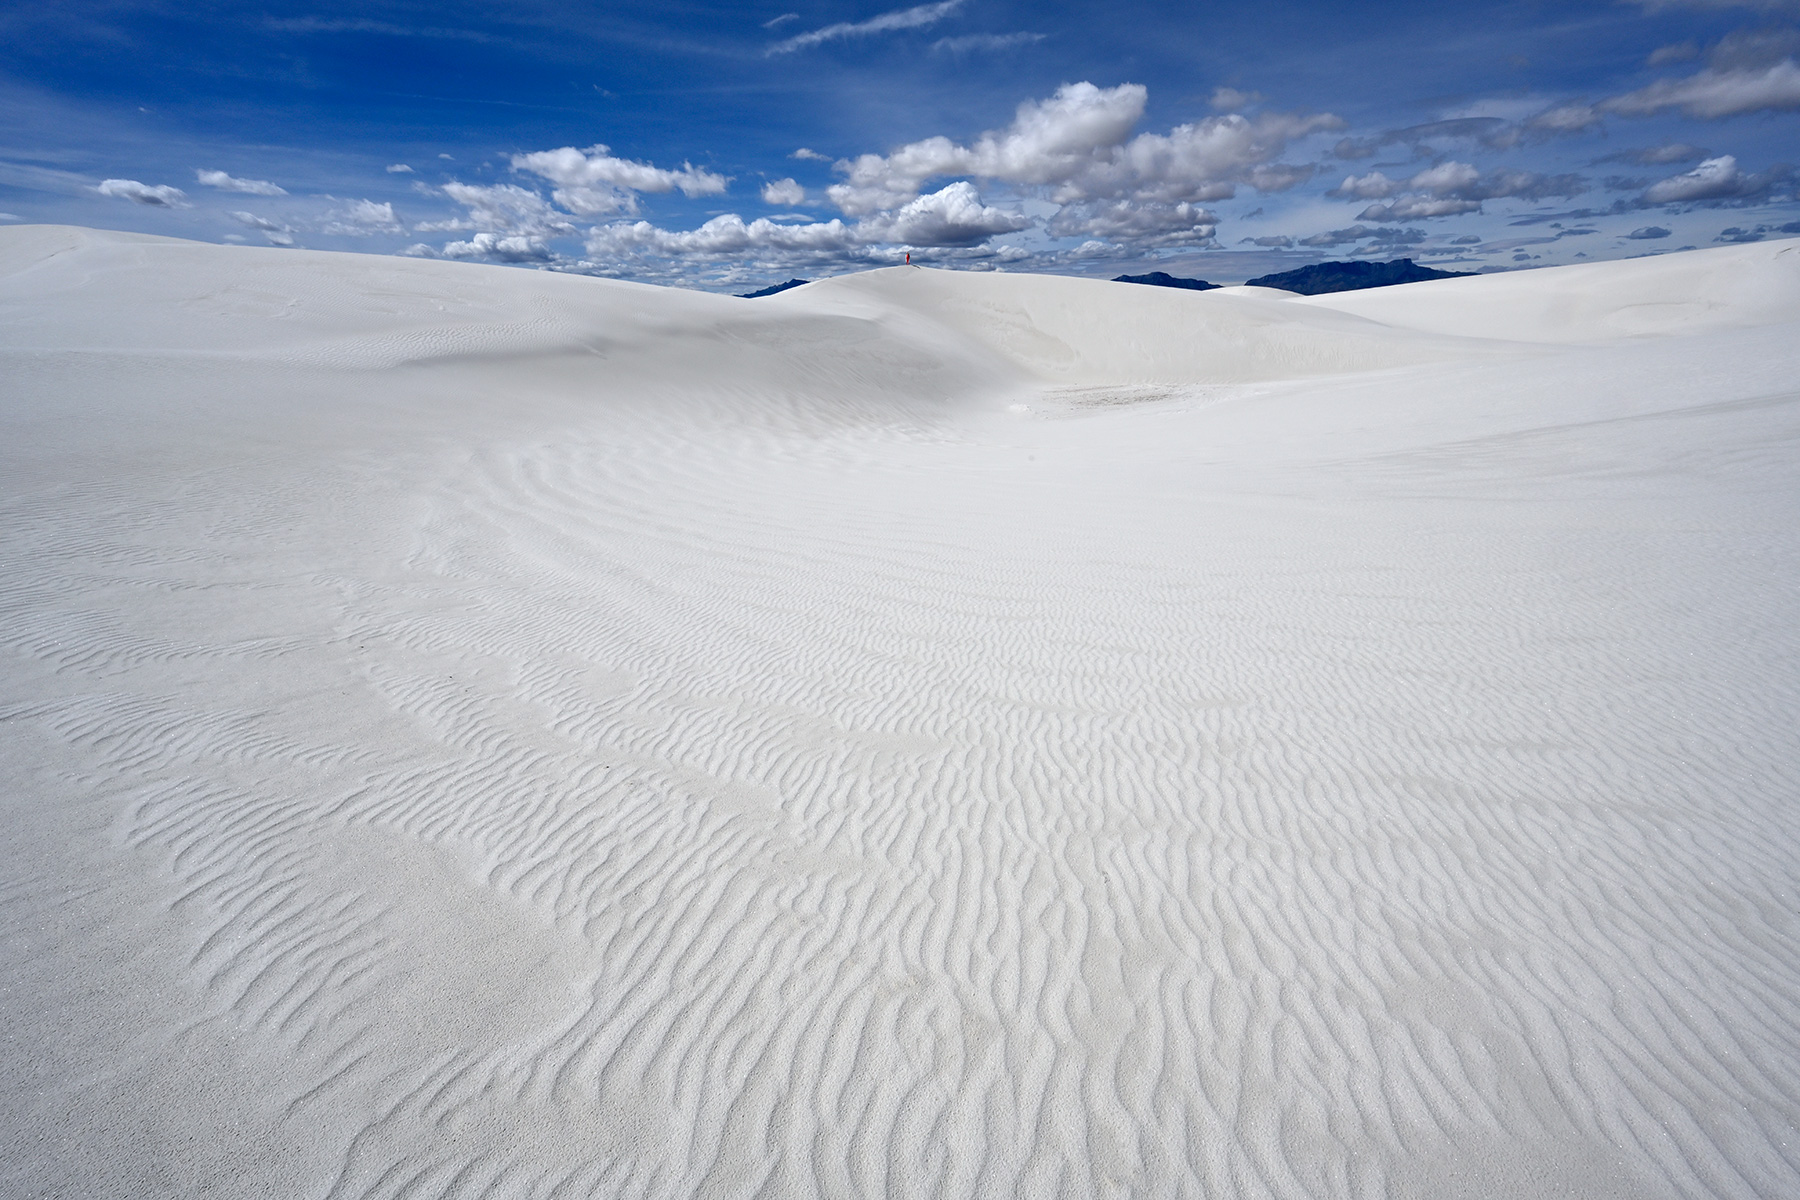 White Sands National Park (Nouveau Mexique, USA) - Grande dune de sable blanc avec rides en premier plan et personnage lointain en rouge au sommet